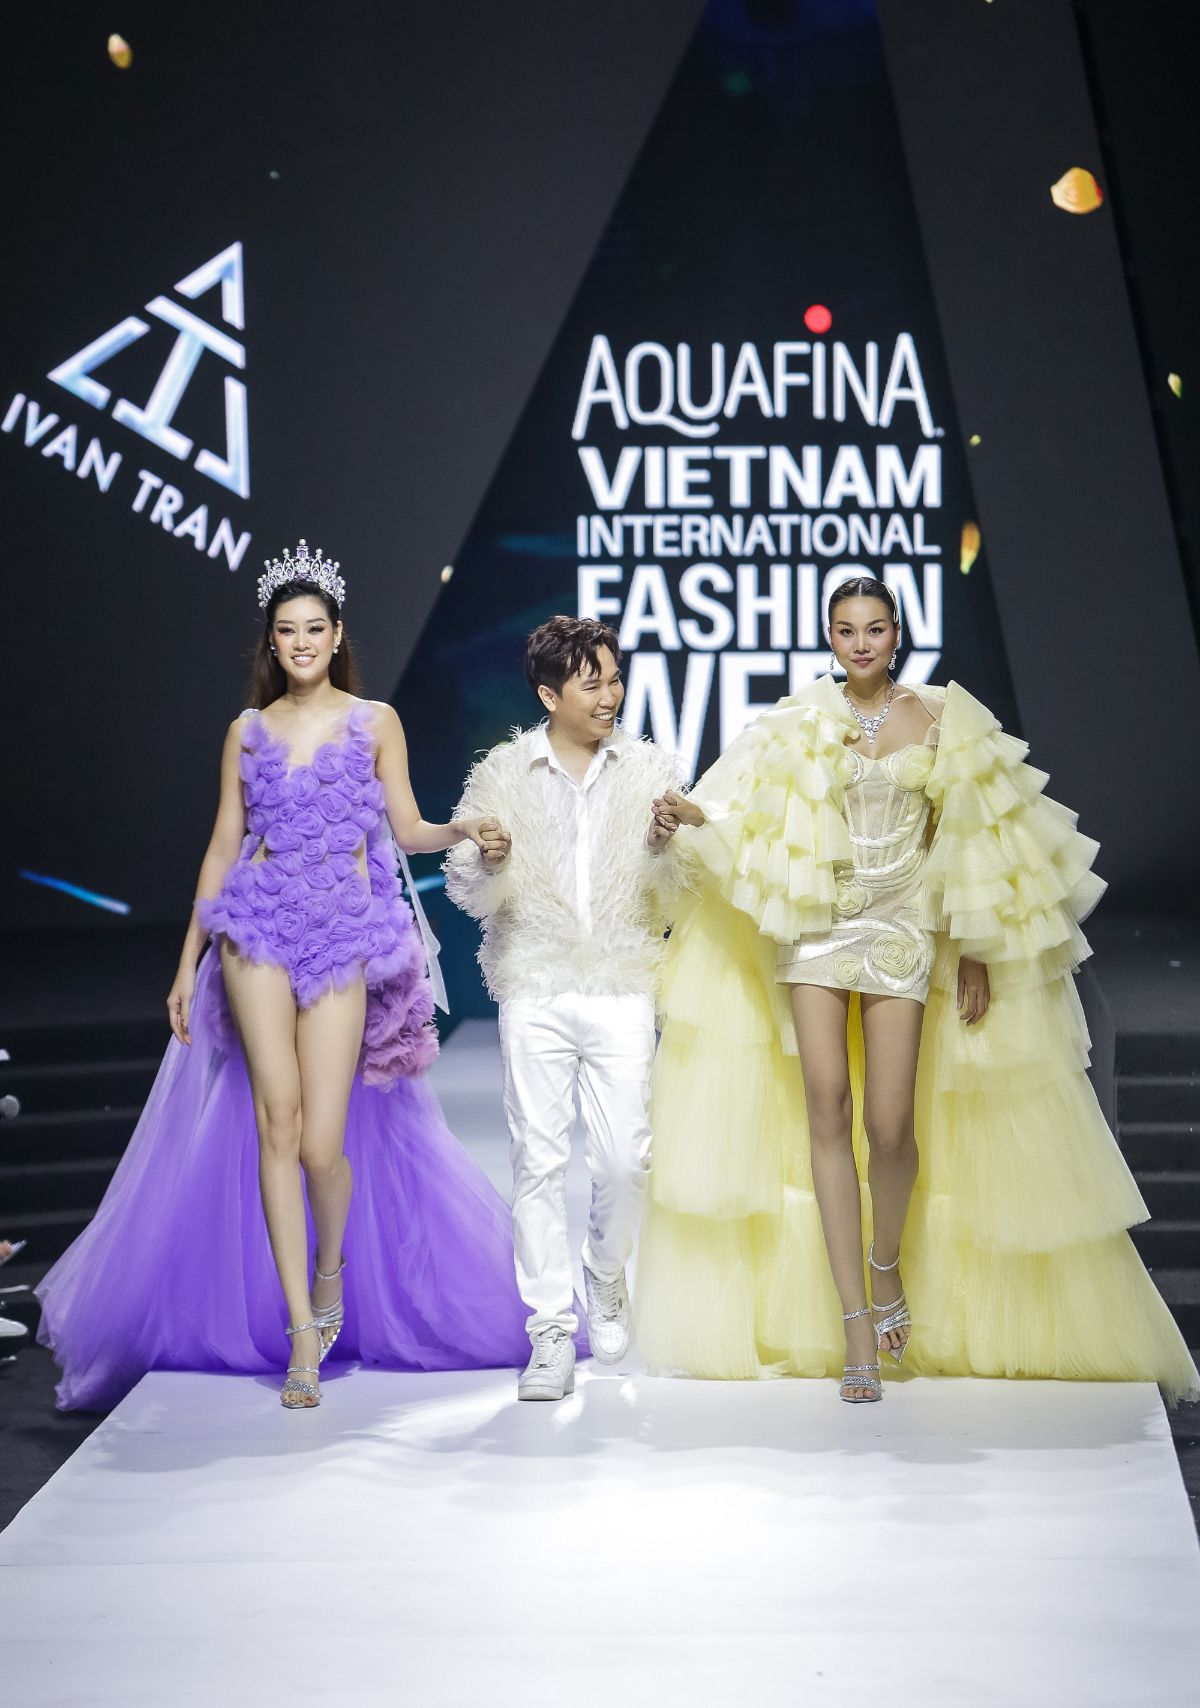 NTK Ivan Trần 1 Thanh Hằng đeo trang sức kim cương 2 tỉ làm vedette cho show của NTK Ivan Trần